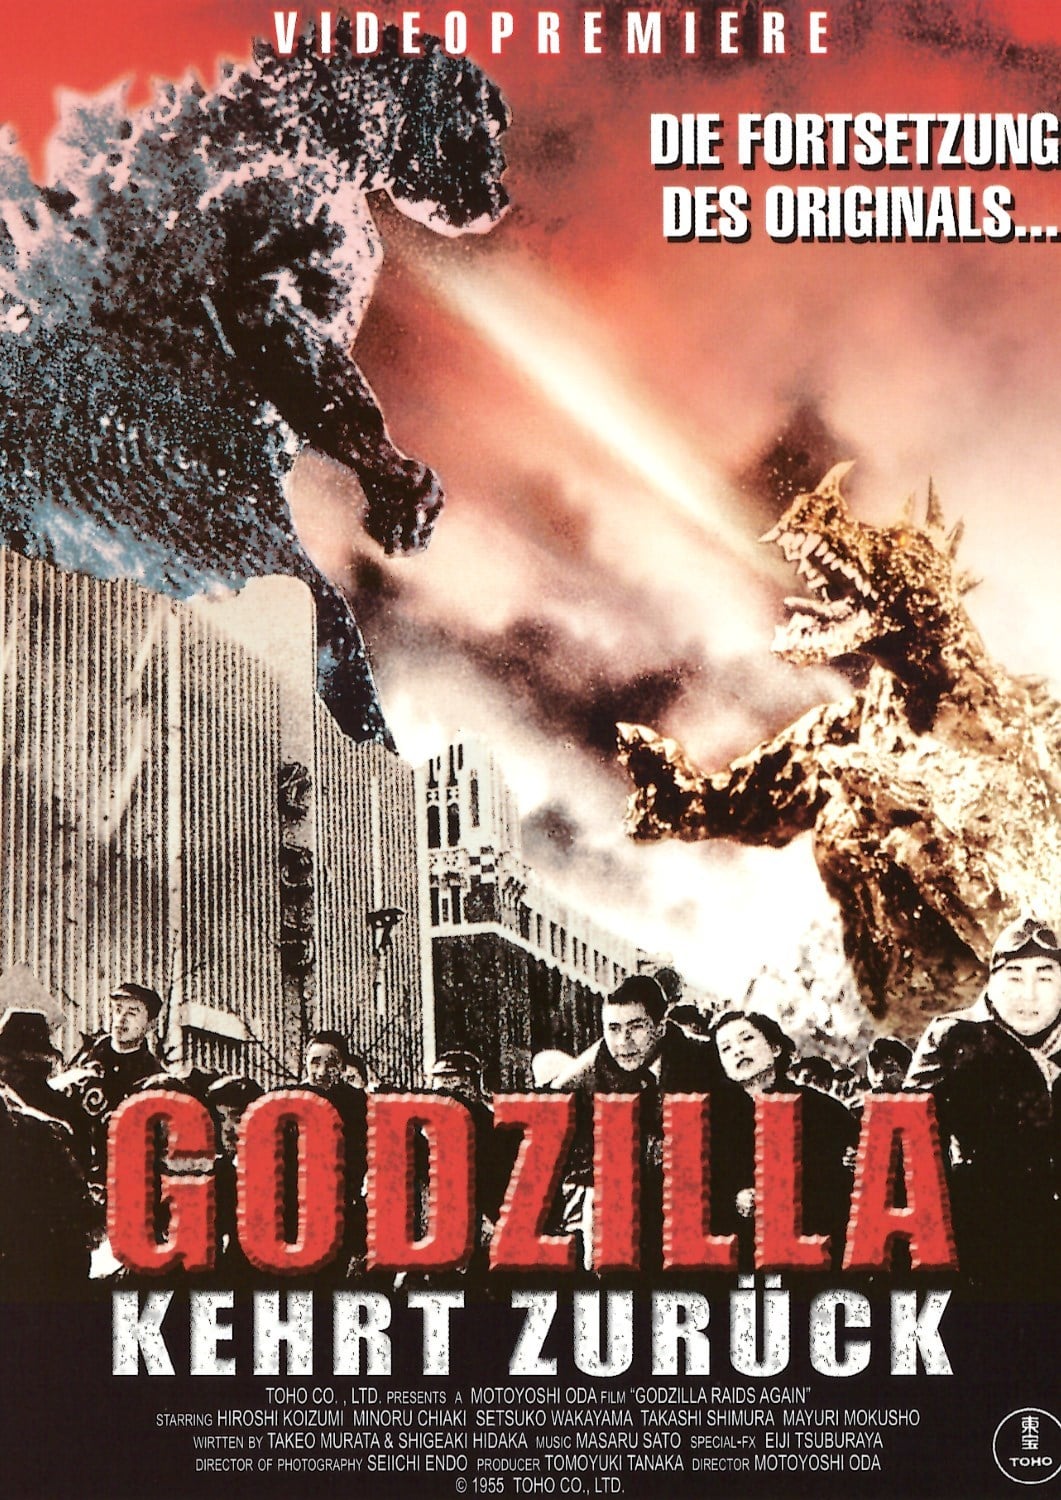 Plakat von "Godzilla kehrt zurück"